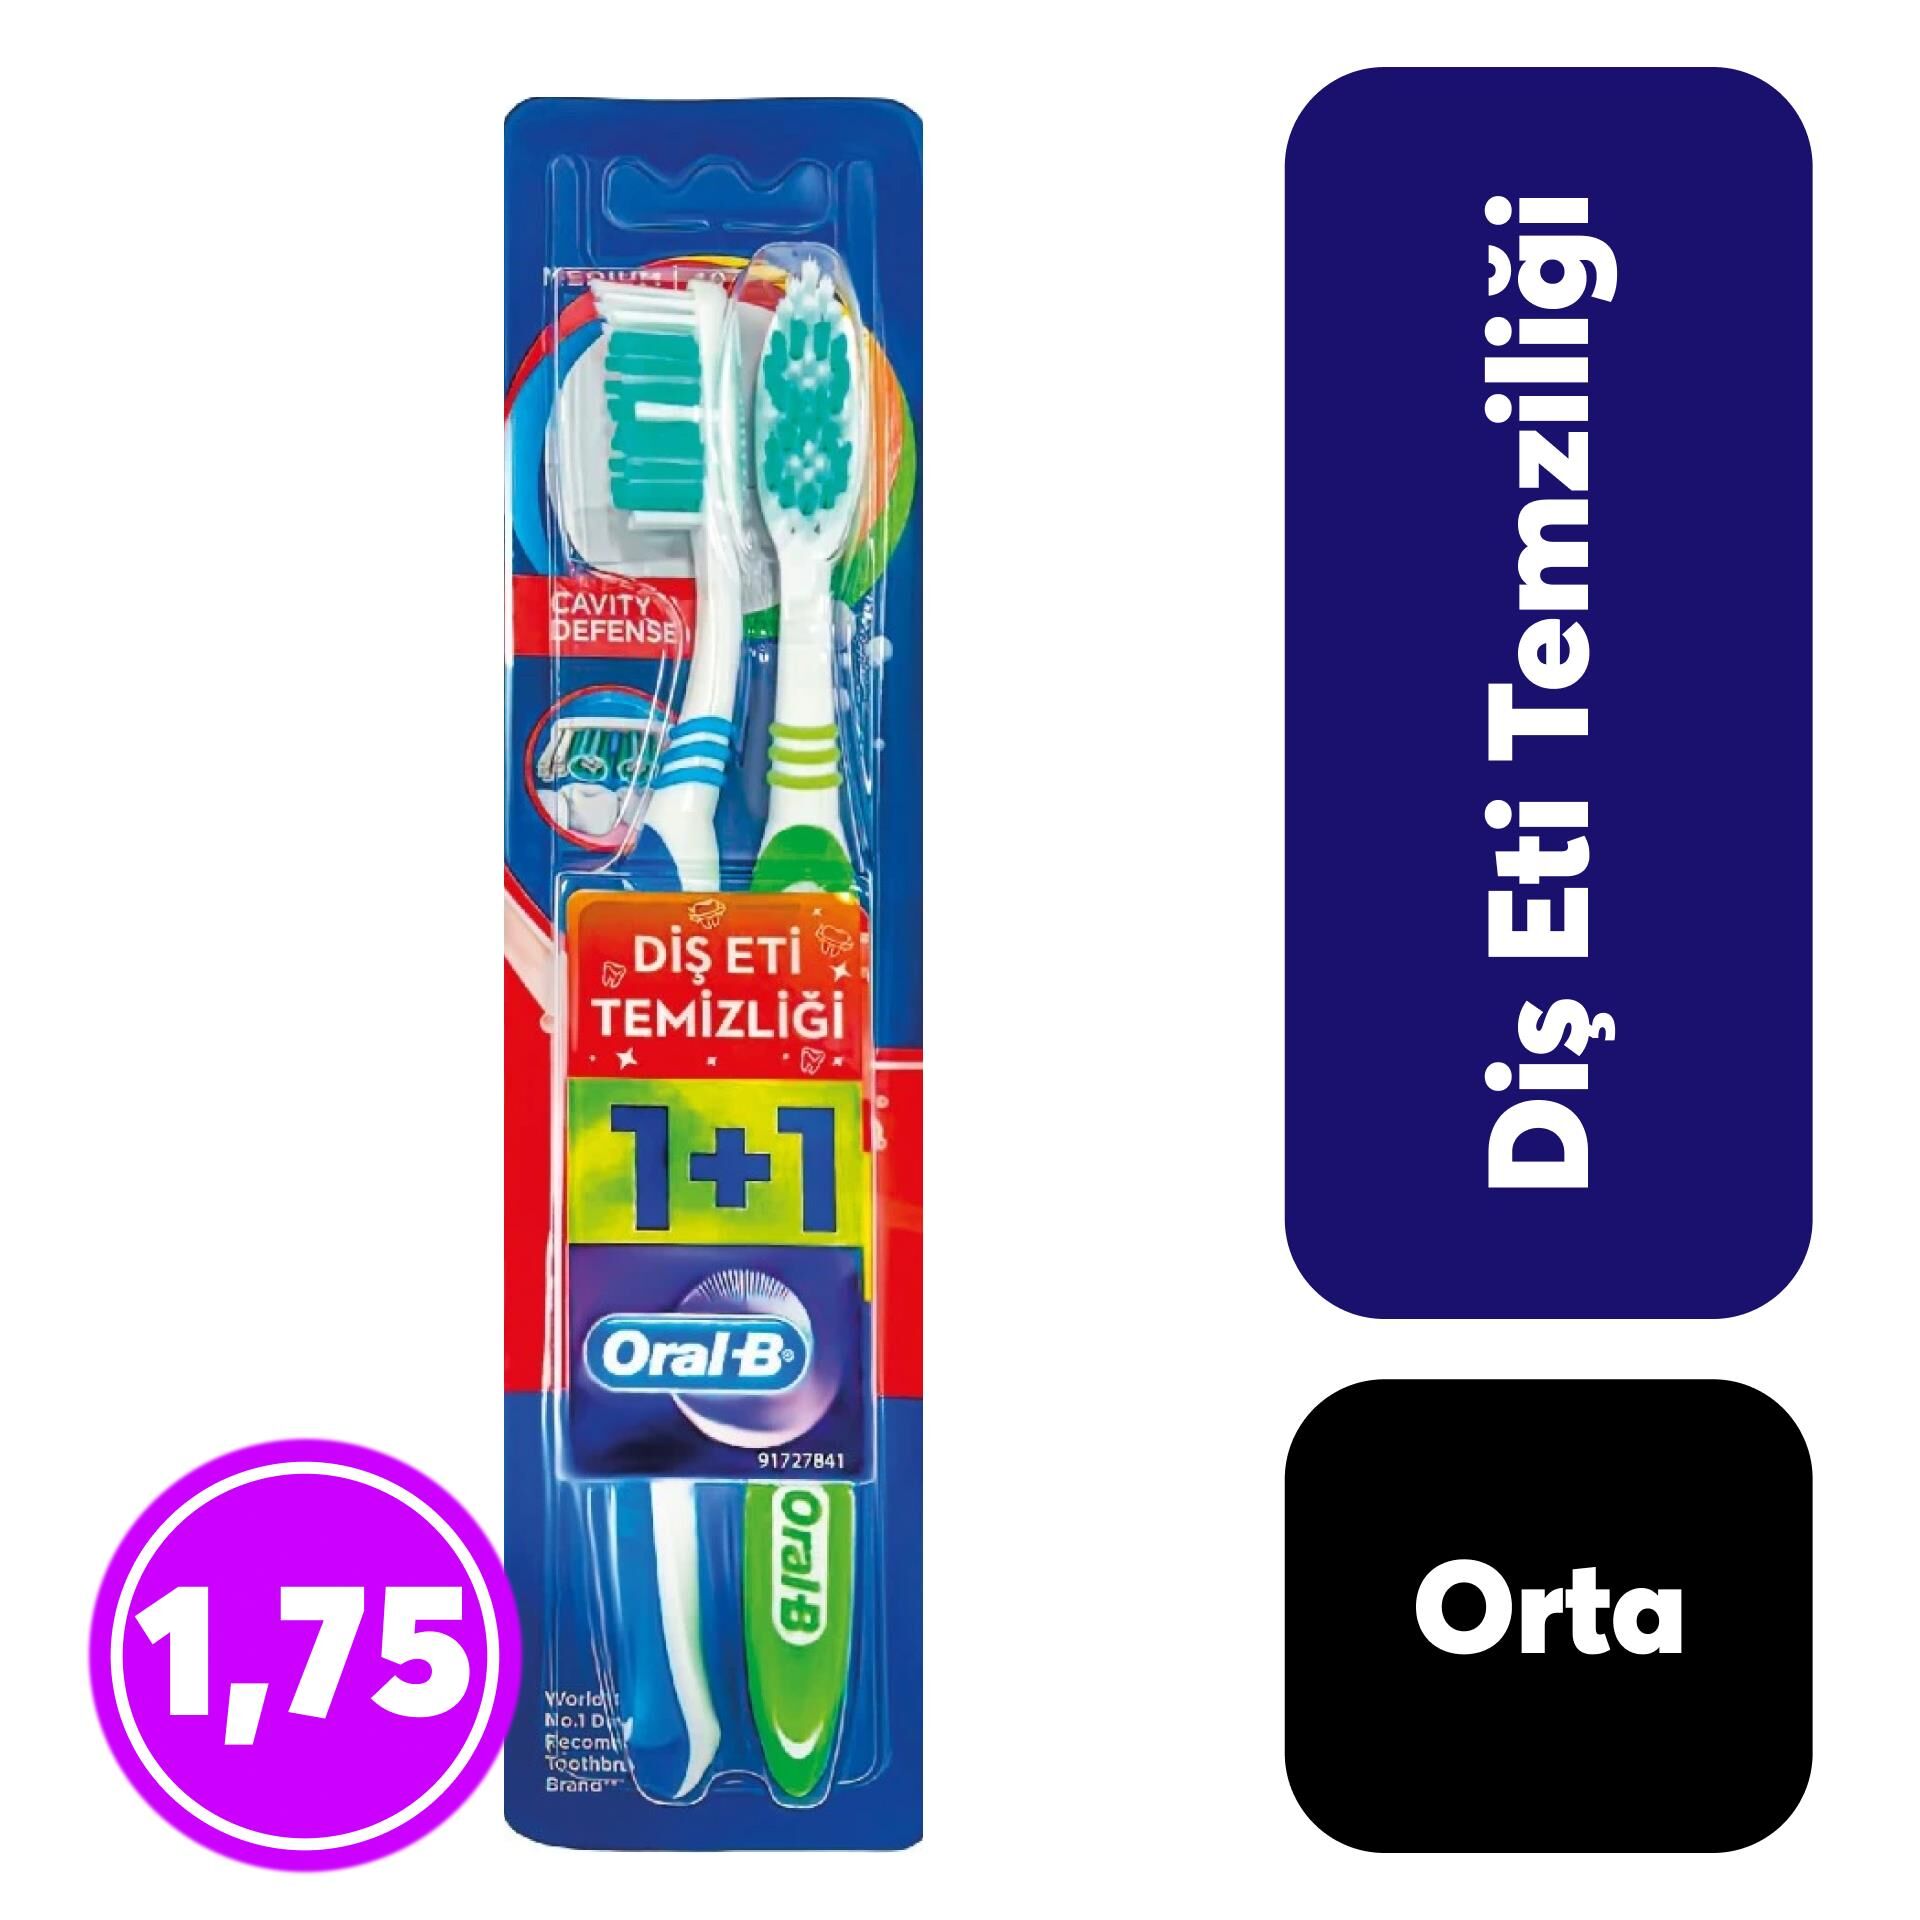 Oral-B 1+1 Diş Fırçası Diş Eti Temizliği